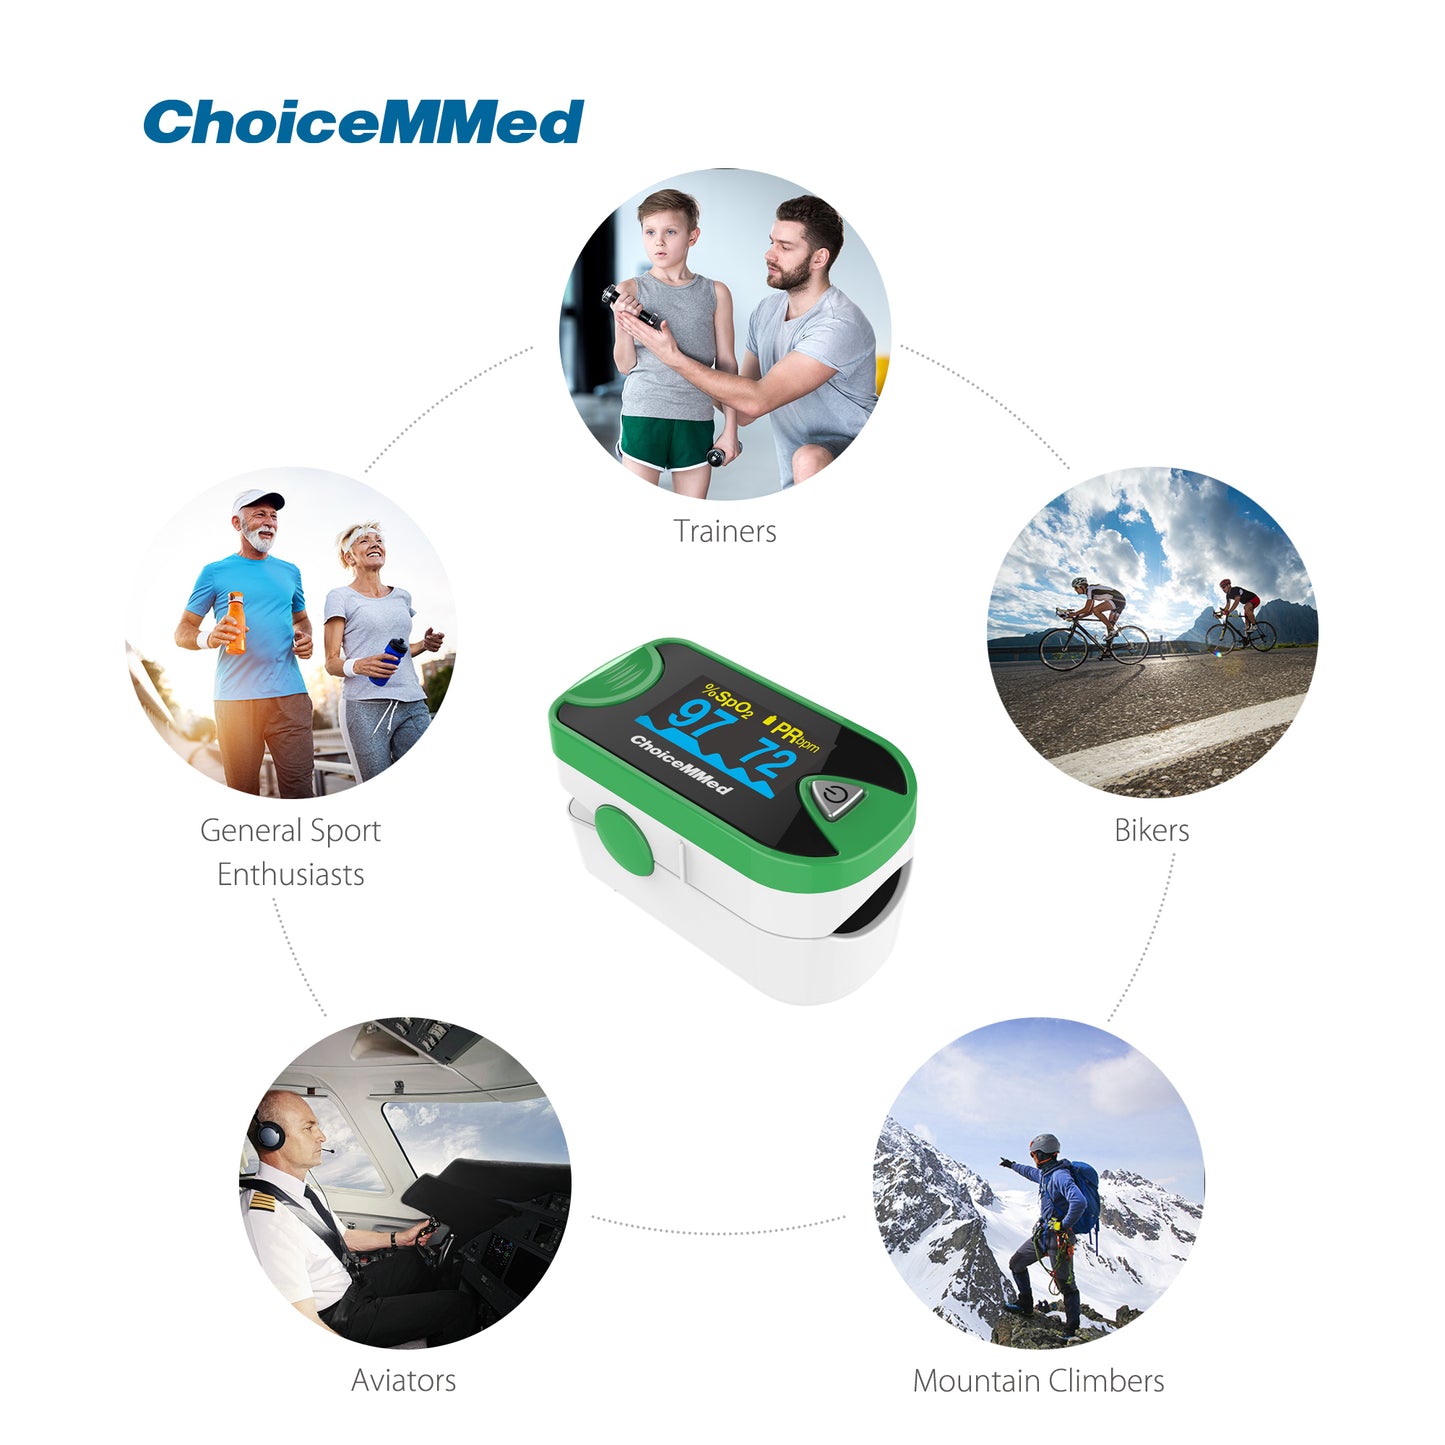 CHOICEMMED MD300C26 OLED Green Professional Medical Fingertip Pulse Oximeter On Finger Blood Oxygen Saturation Meter Health Care